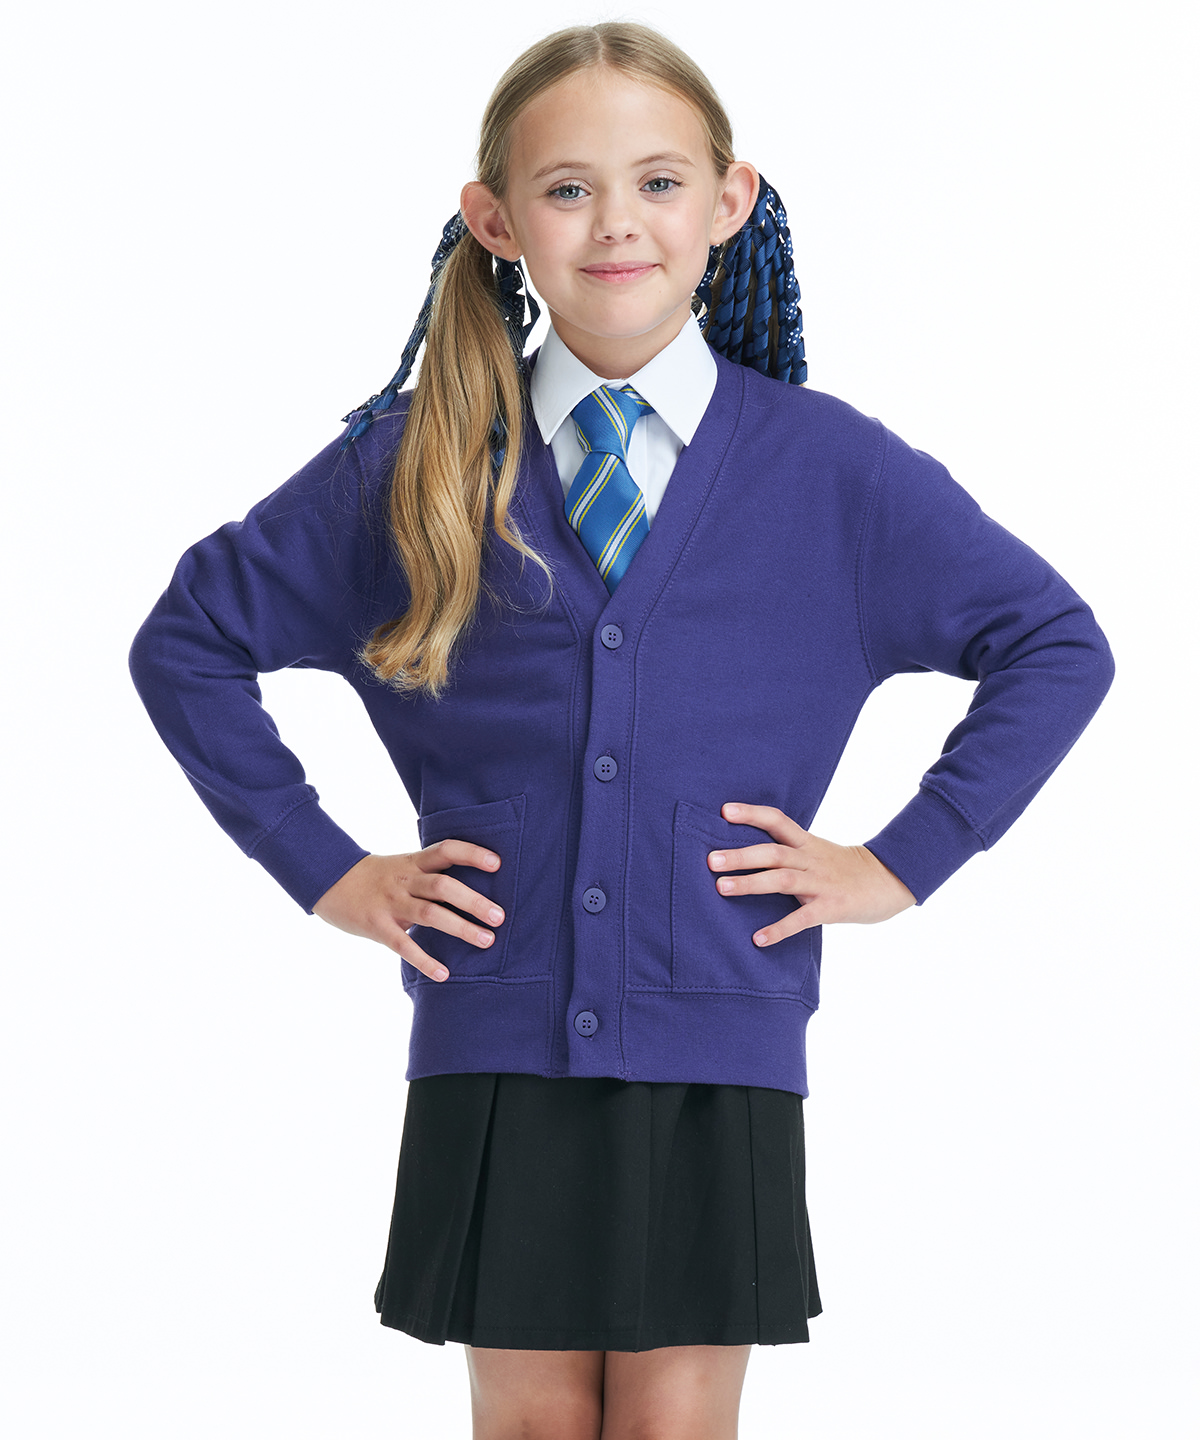 tenue scolaire - uniforme scolaire enfant